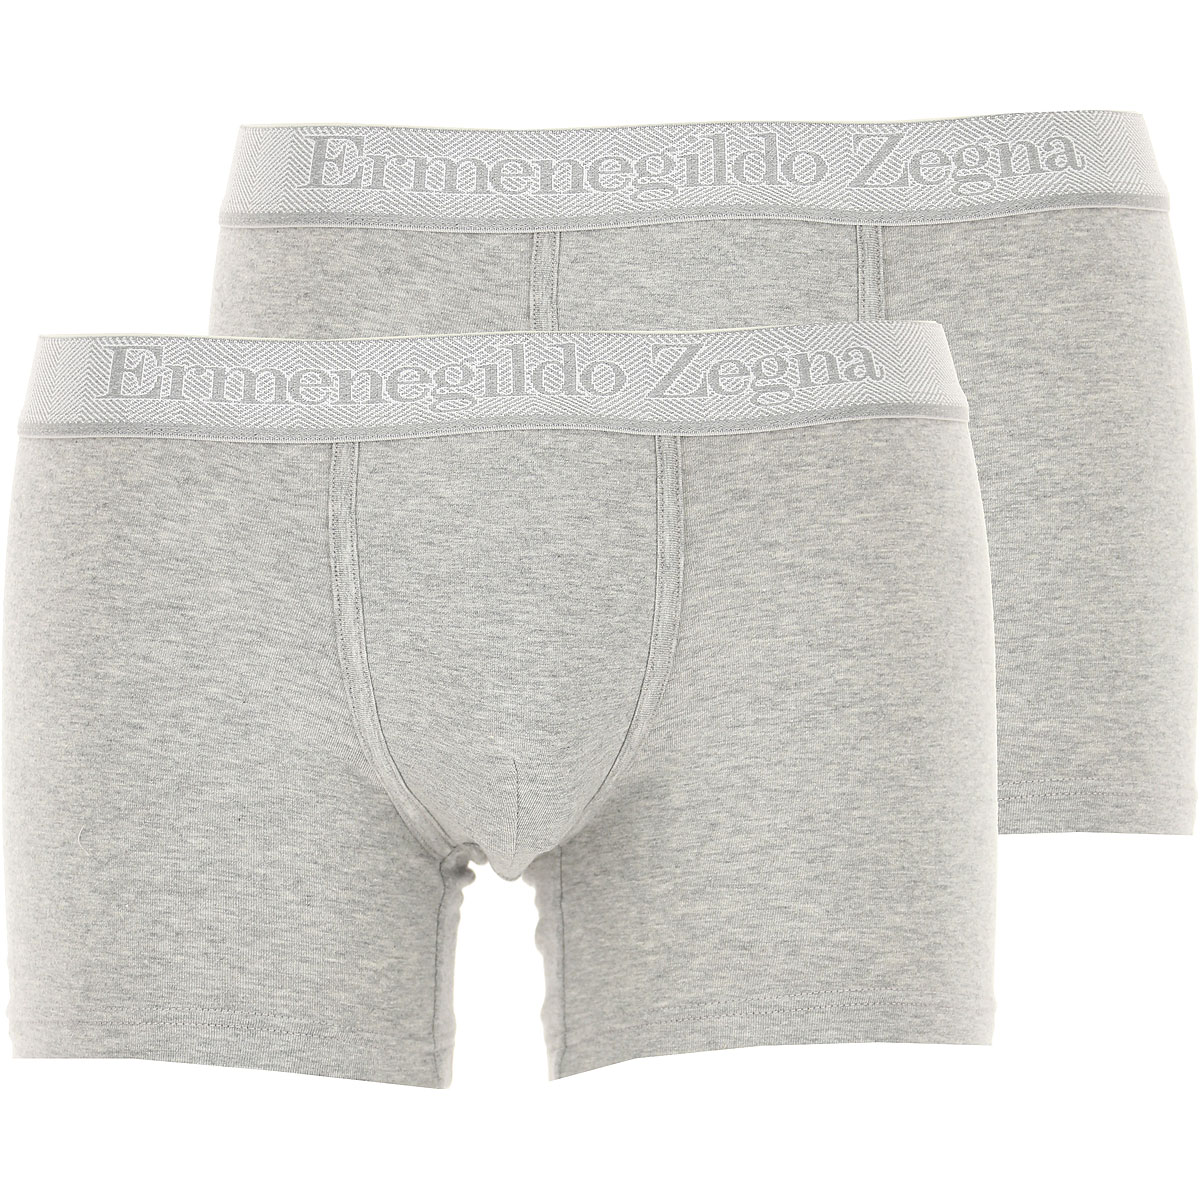 Ermenegildo Zegna Boxer Shorts für Herren, Unterhose, Short, Boxer Günstig im Sale, 2 Pack, Grau Melange, Baumwolle, 2017, L S XL